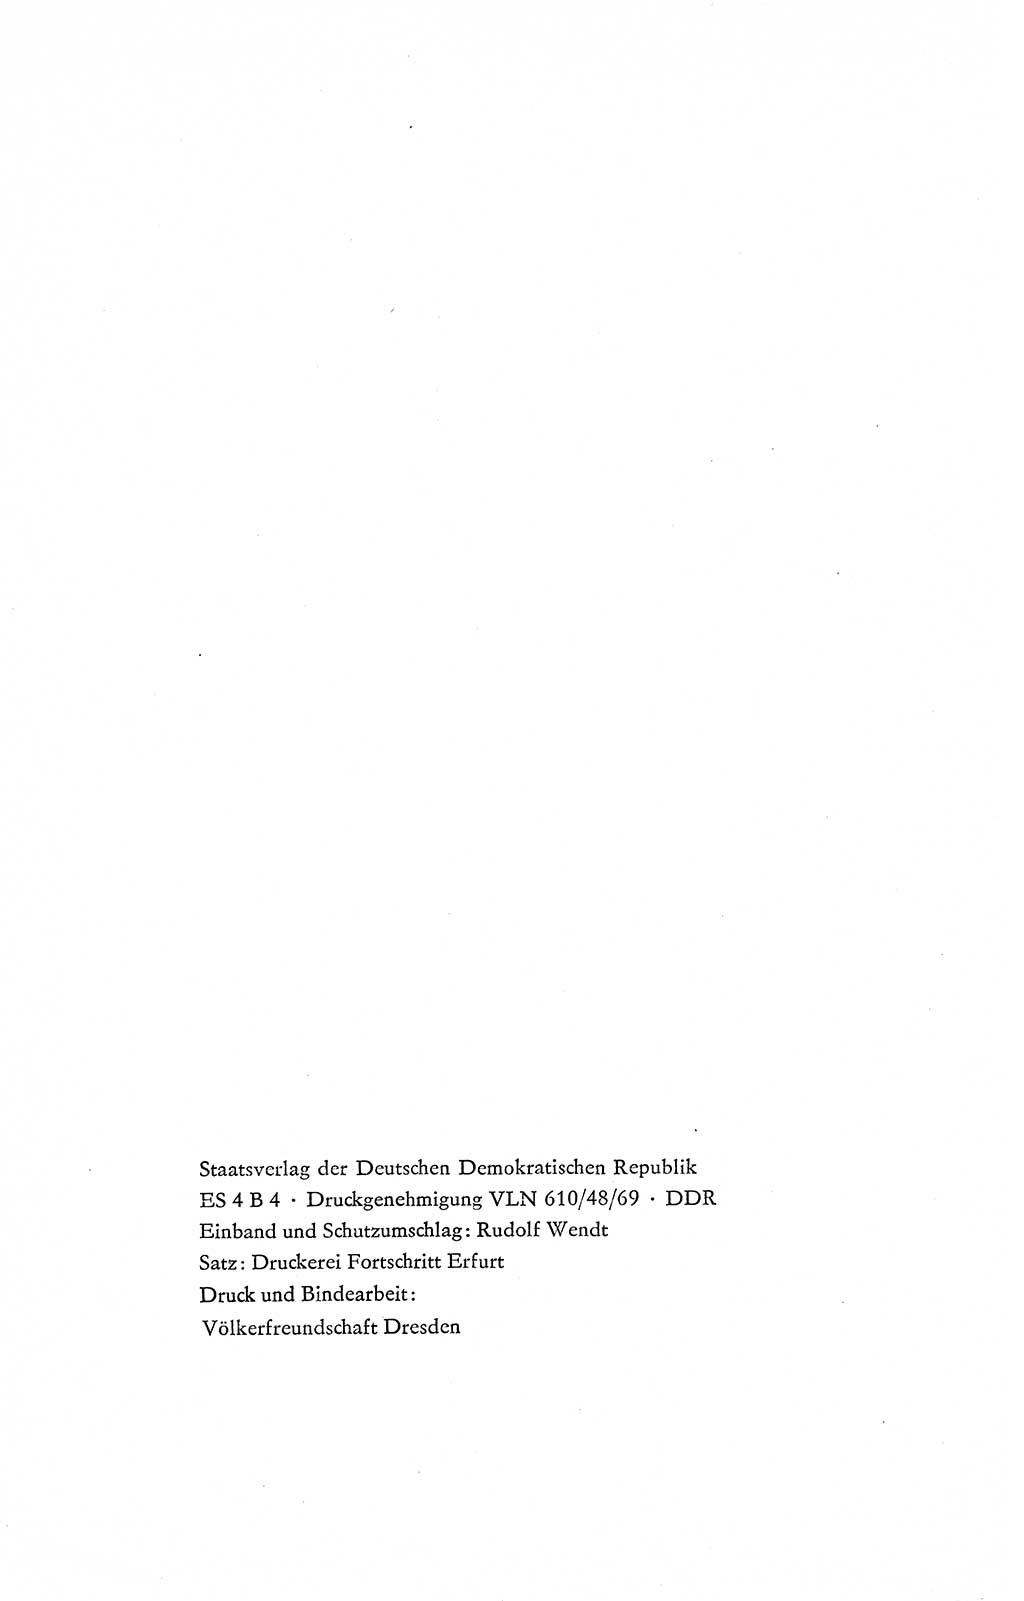 Verfassung der Deutschen Demokratischen Republik (DDR), Dokumente, Kommentar 1969, Band 2, Seite 556 (Verf. DDR Dok. Komm. 1969, Bd. 2, S. 556)